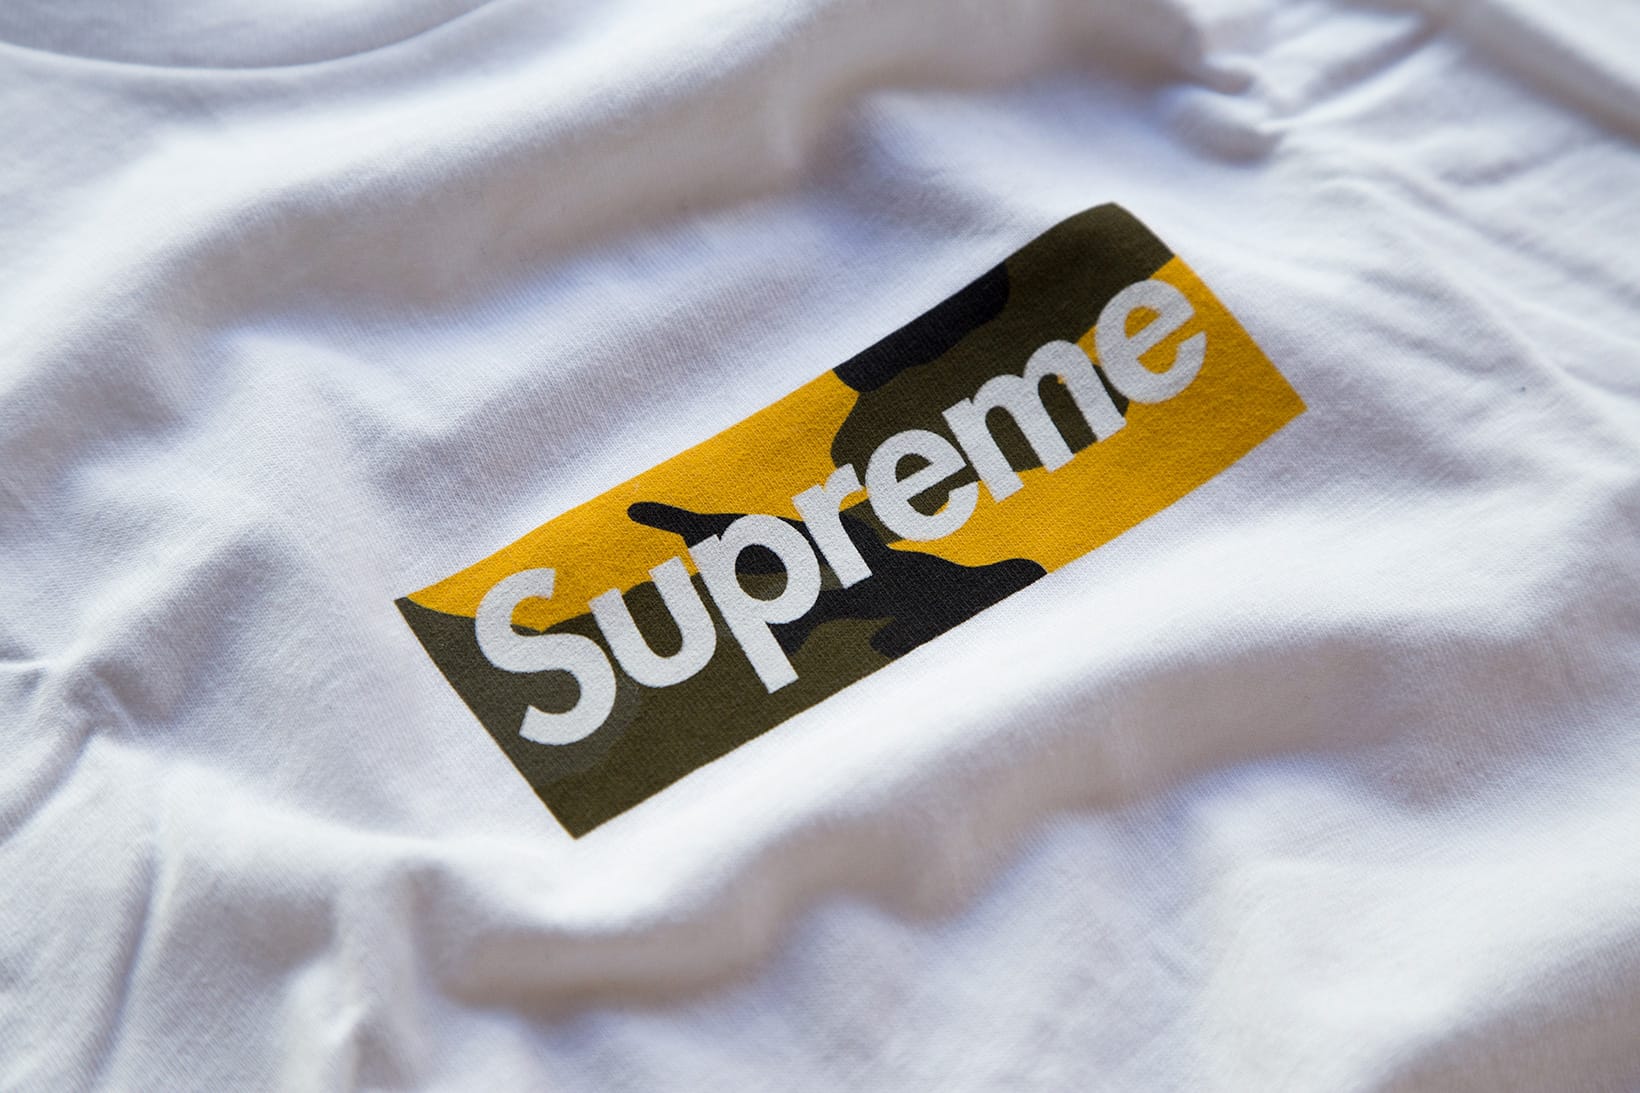 Cheapest Supreme Box Logo Shirt Store, 58% OFF | www.vetyvet.com